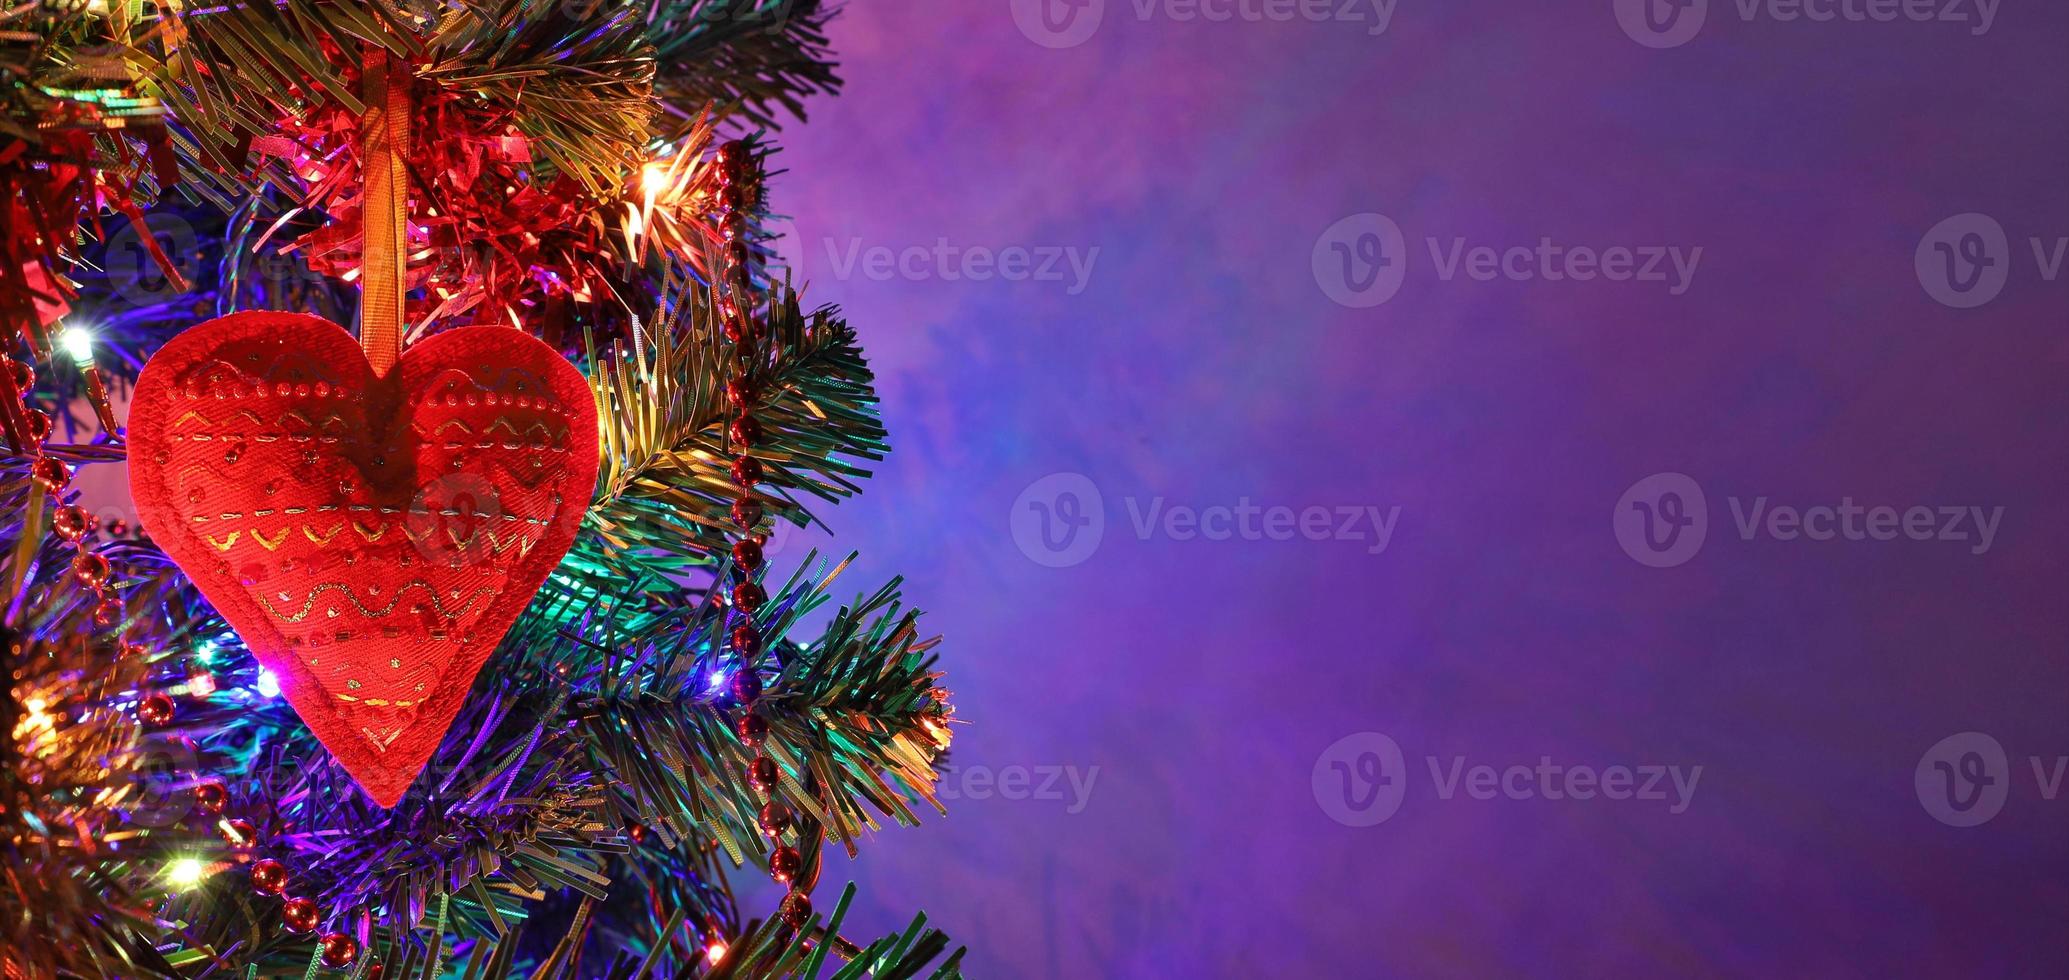 Rotes Herz, handgefertigte Weihnachtsdekoration mit Ornament auf Tanne in der Feiertagsnacht, bunte Bokeh-Girlande, rote Perlen, unscharfer dunkelvioletter Hintergrund. weihnachtsbanner mit kopierraum. foto